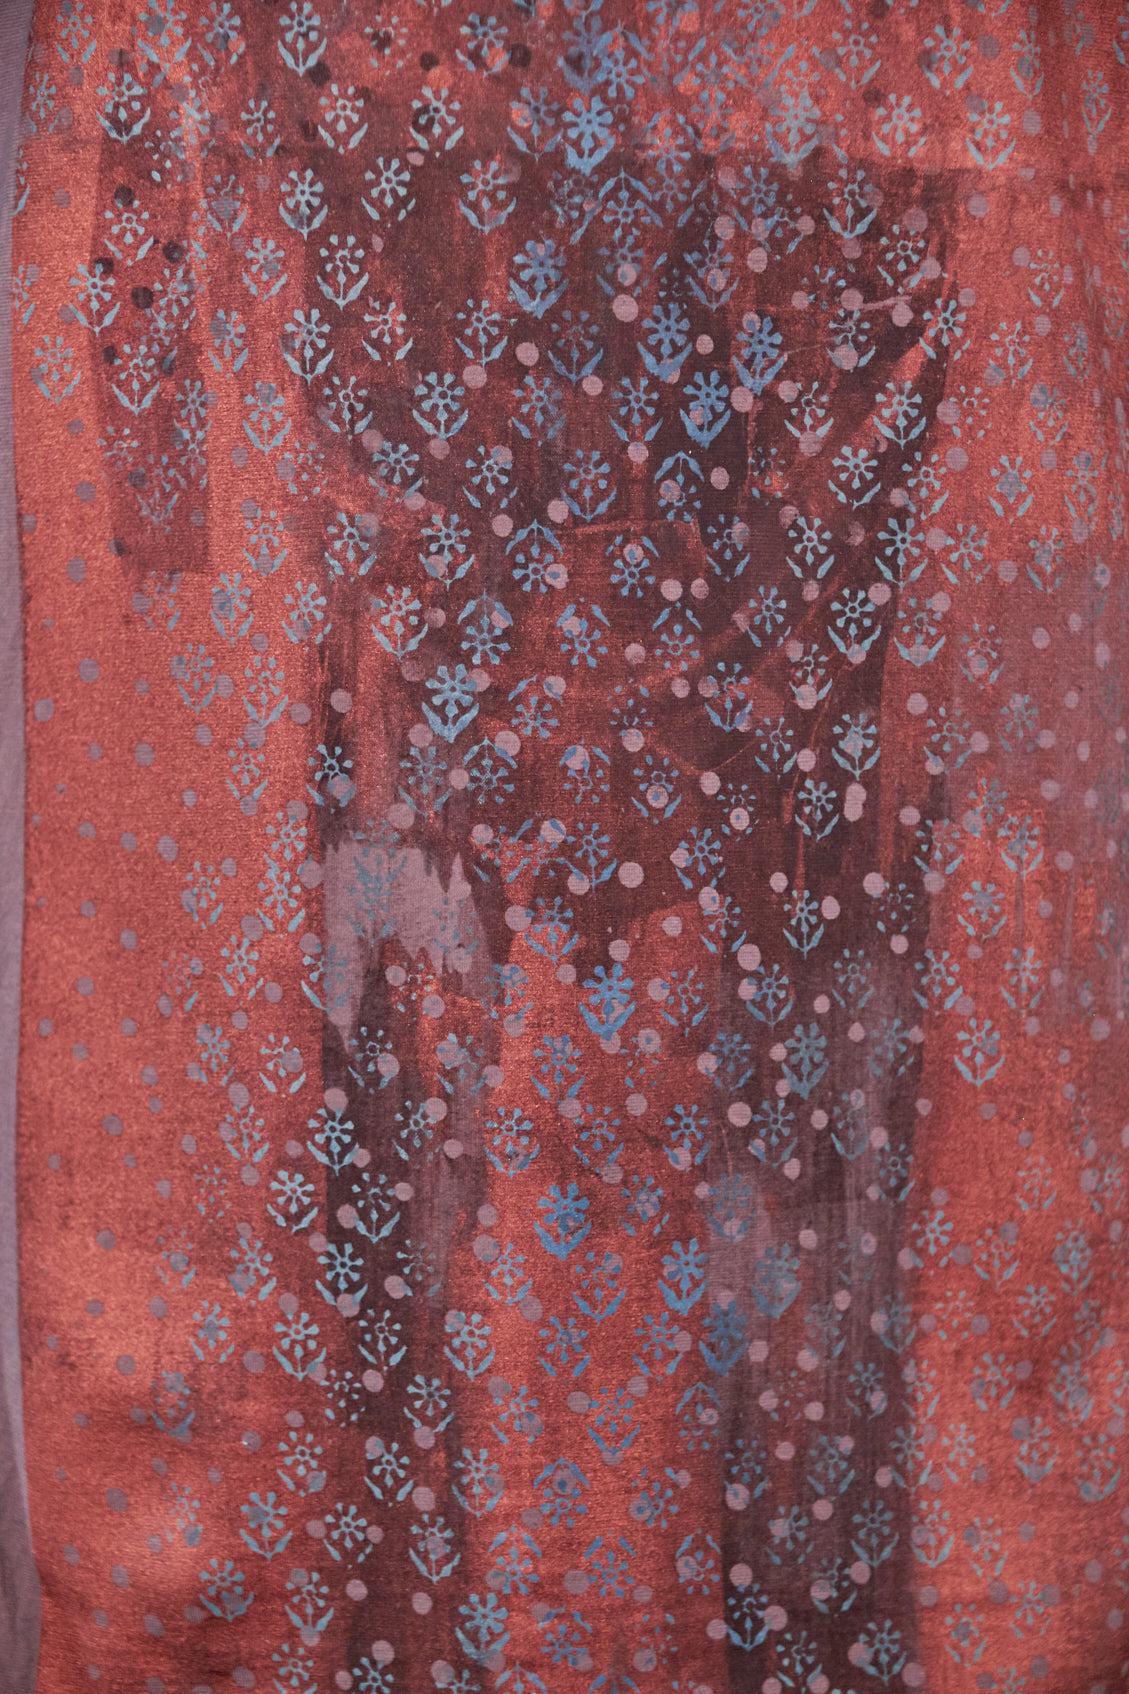 1564 Slim Fit Art Tunic Flint-Distressed Copper Patina